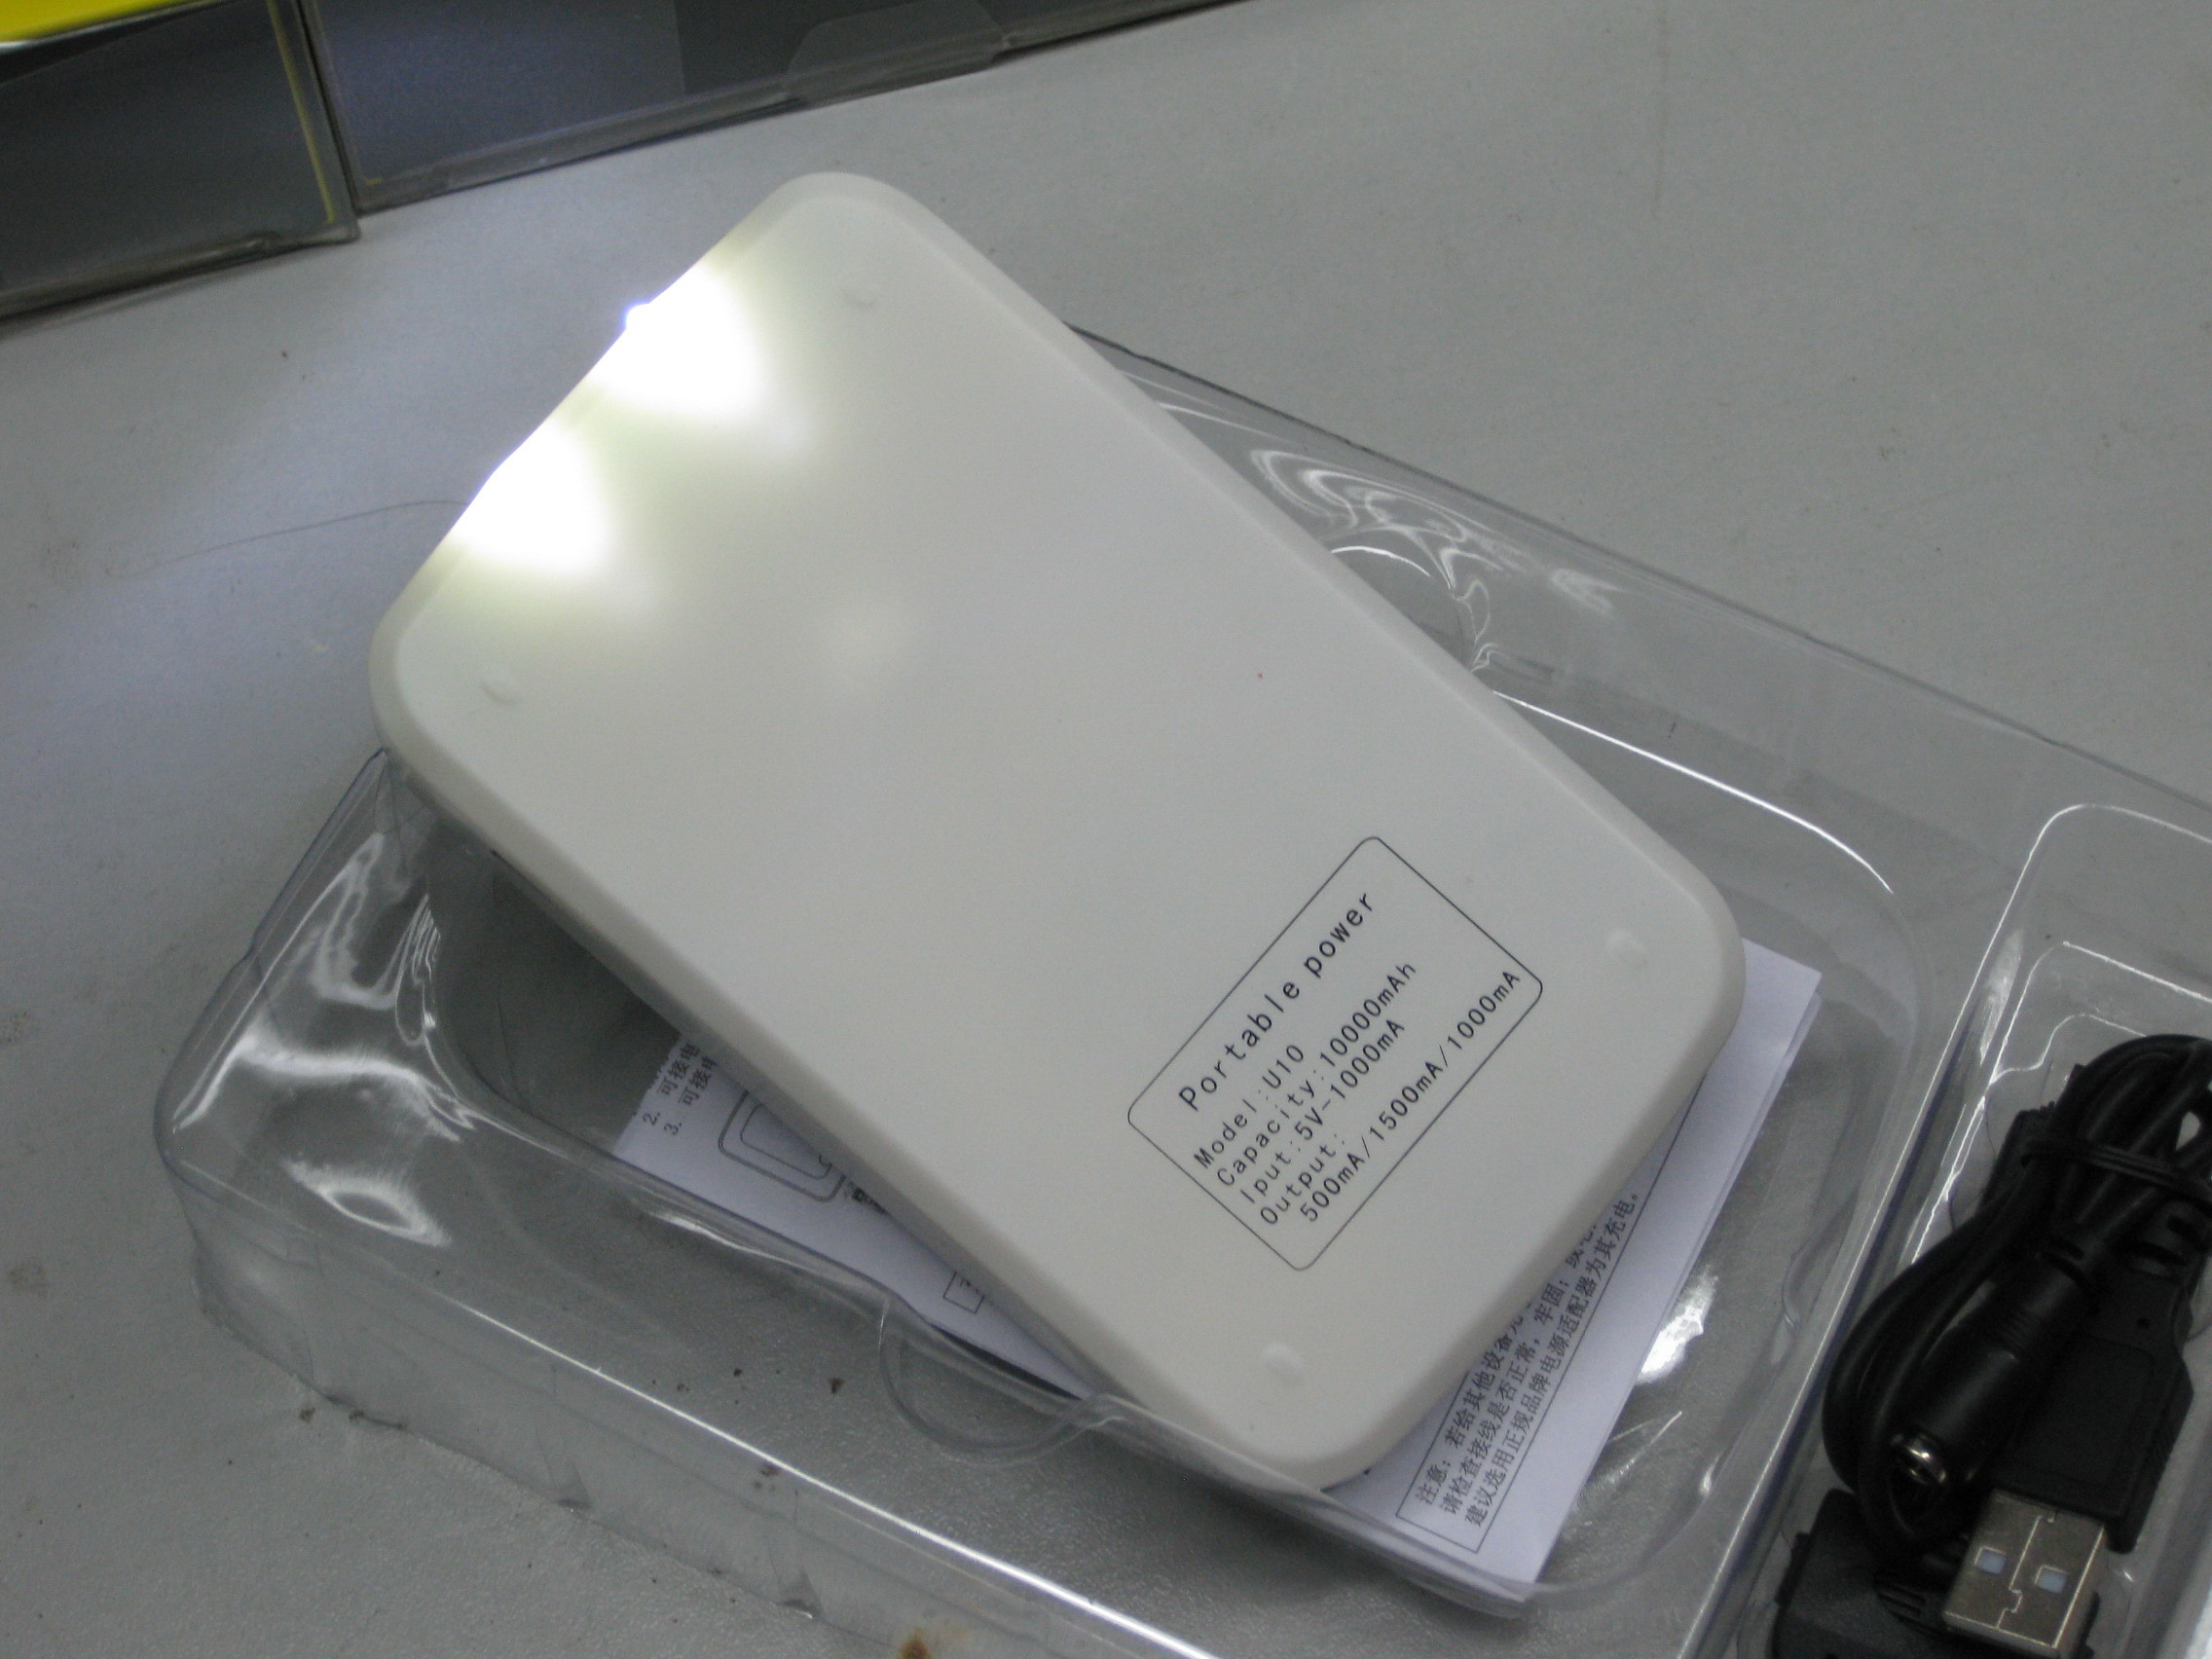 Ni blanc d'Ipad - la puissance de batterie portative de duracell rechargeable de MH emballe des chargeurs de convertisseur